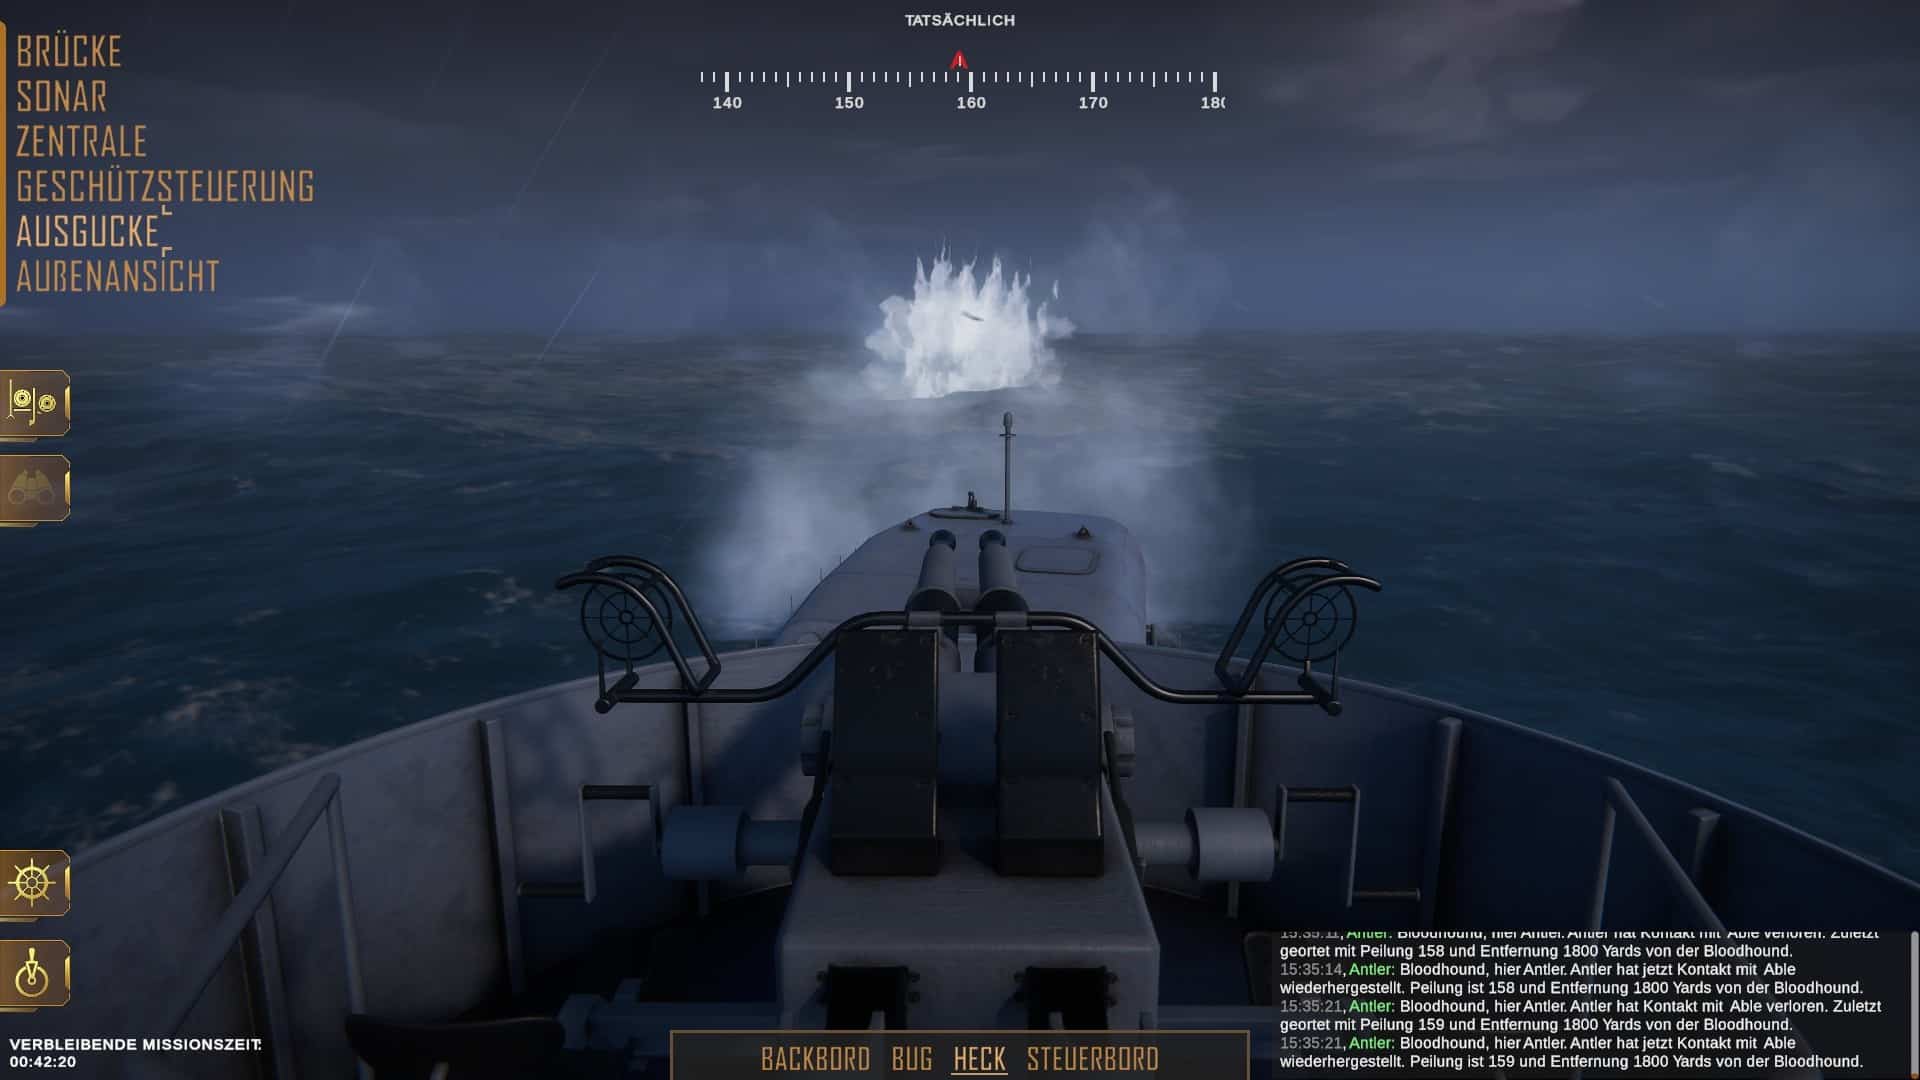 (Uボートが水上にある限り、搭載砲で破壊を試みることができる)